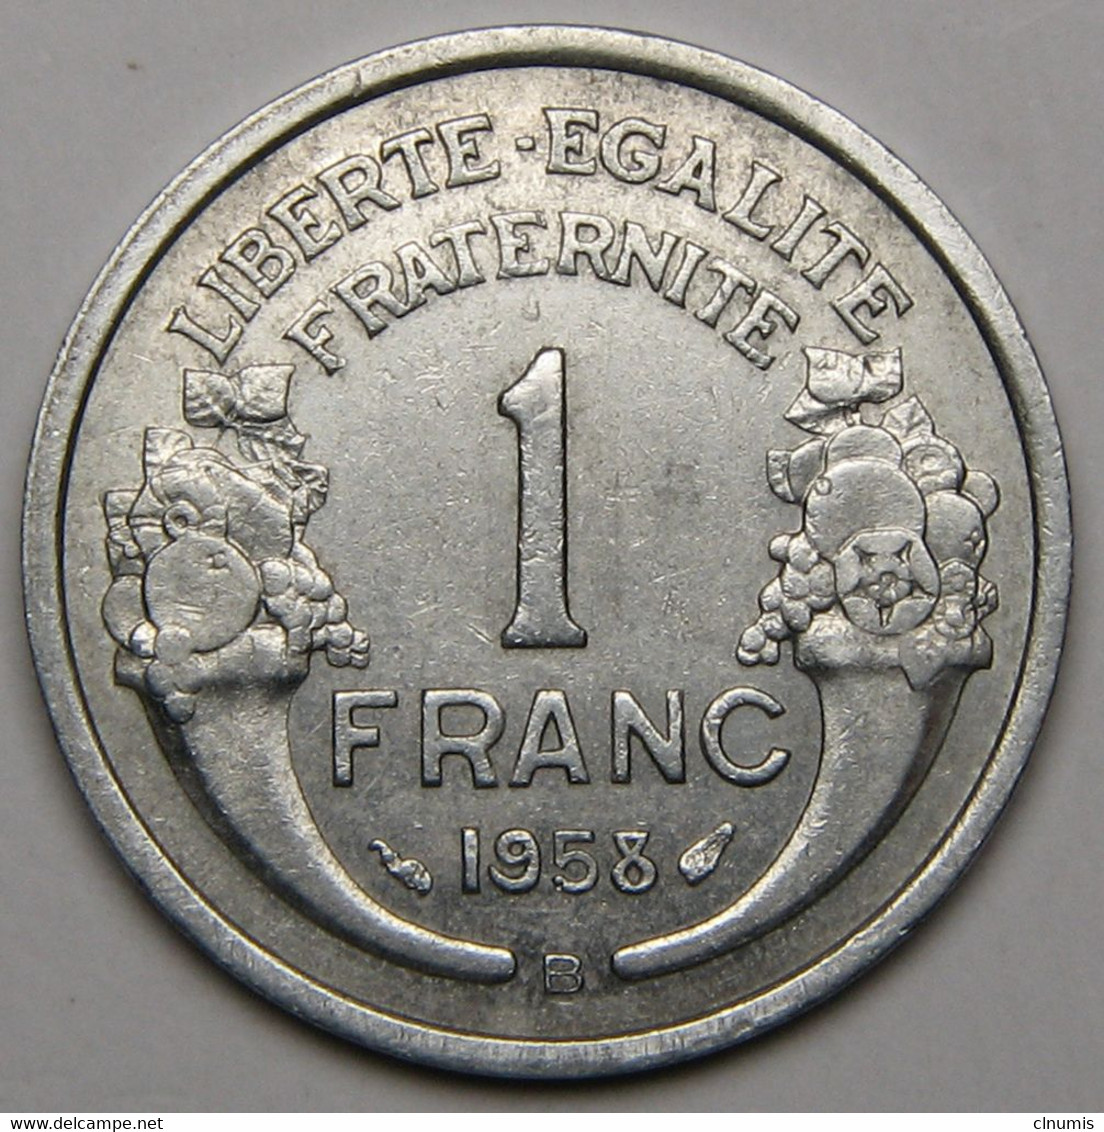 ASSEZ RARE ! 1 Franc Morlon 1958 B (Beaumont-le-Roger), Aluminium - IV° République - 1 Franc